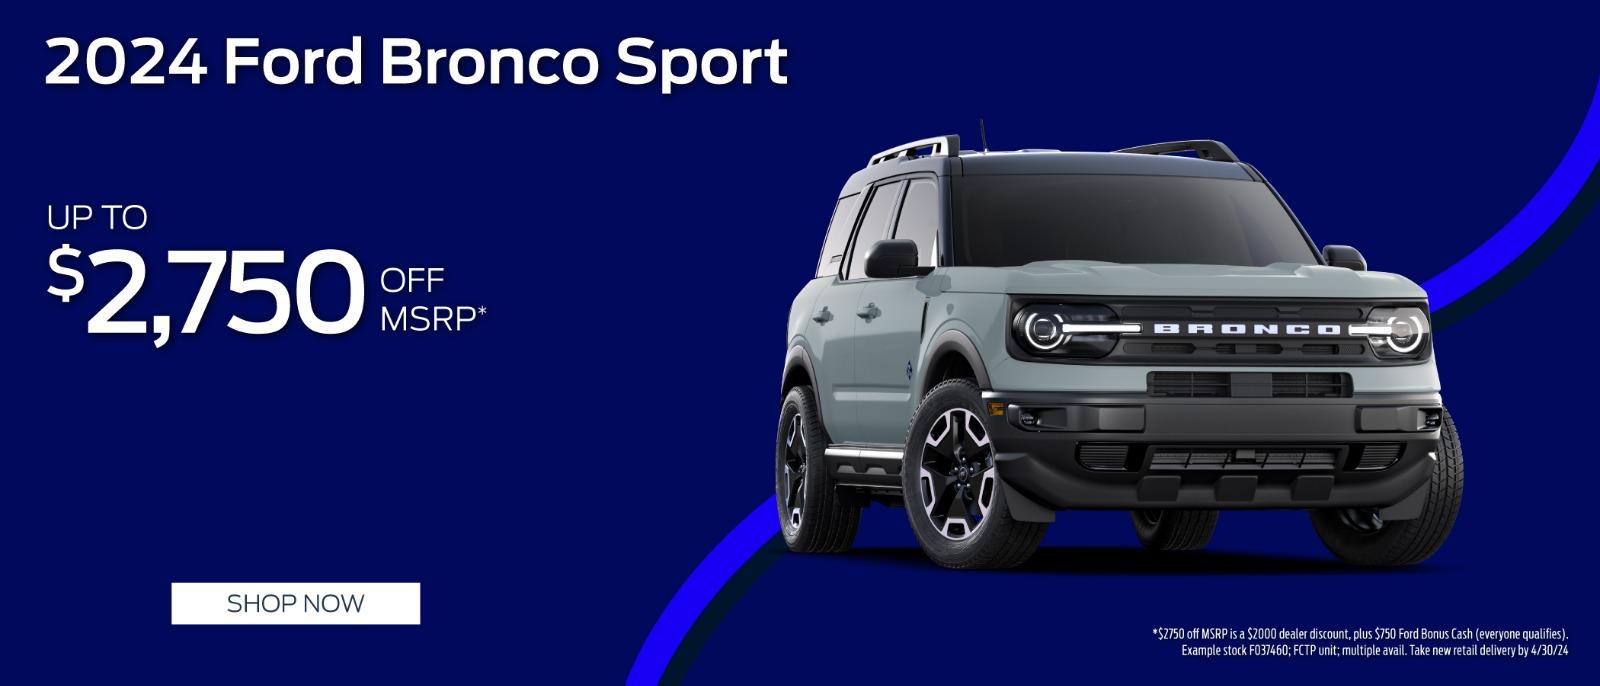 2024 Ford Bronco Sport $2,750 Off MSRP